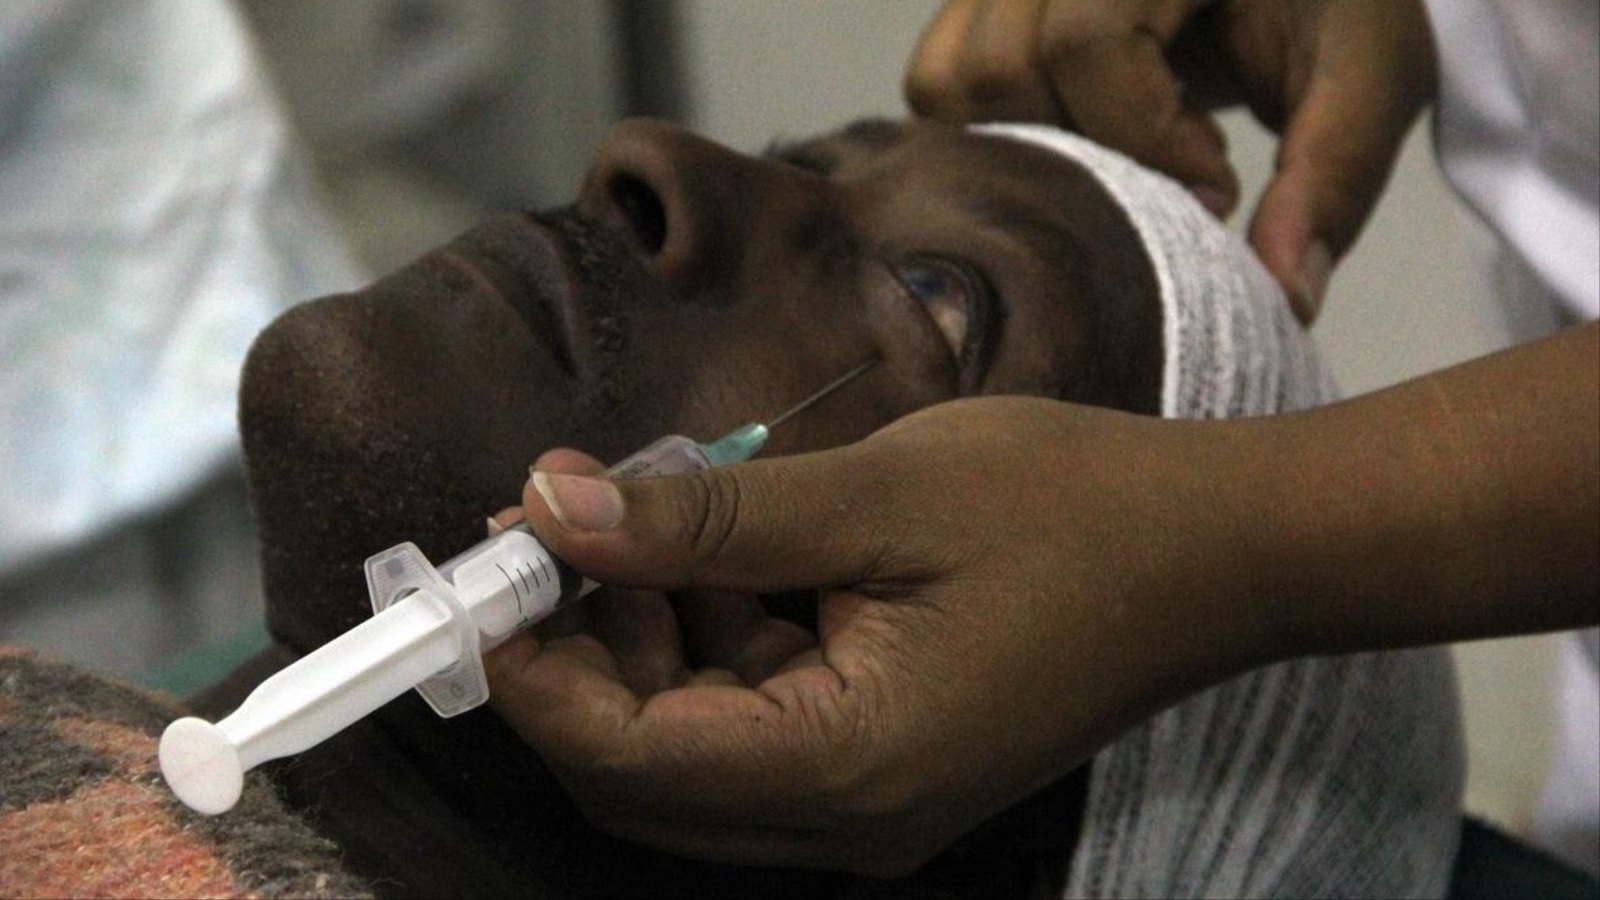 أكثر من ثلاثمئة ألف إثيوبي يعانون من تلف بالقرنية نتيجة سوء العناية بالعيون والفقر (الأناضول)